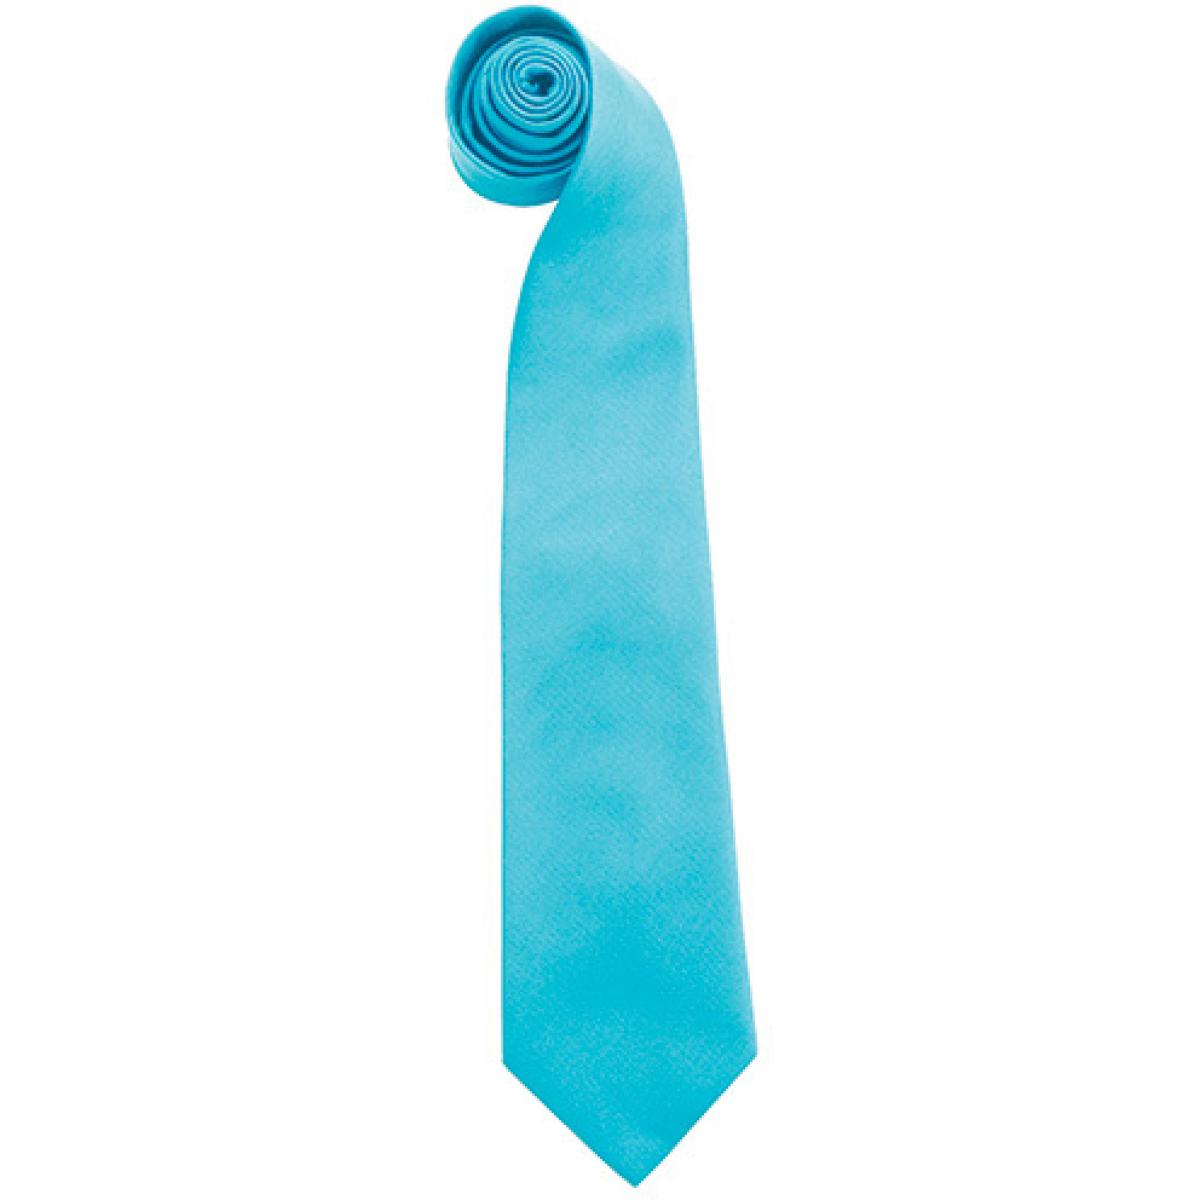 Hersteller: Premier Workwear Herstellernummer: PR765 Artikelbezeichnung: Krawatte Uni-Fashion / Colours Farbe: Turquoise (ca. Pantone 7710C)